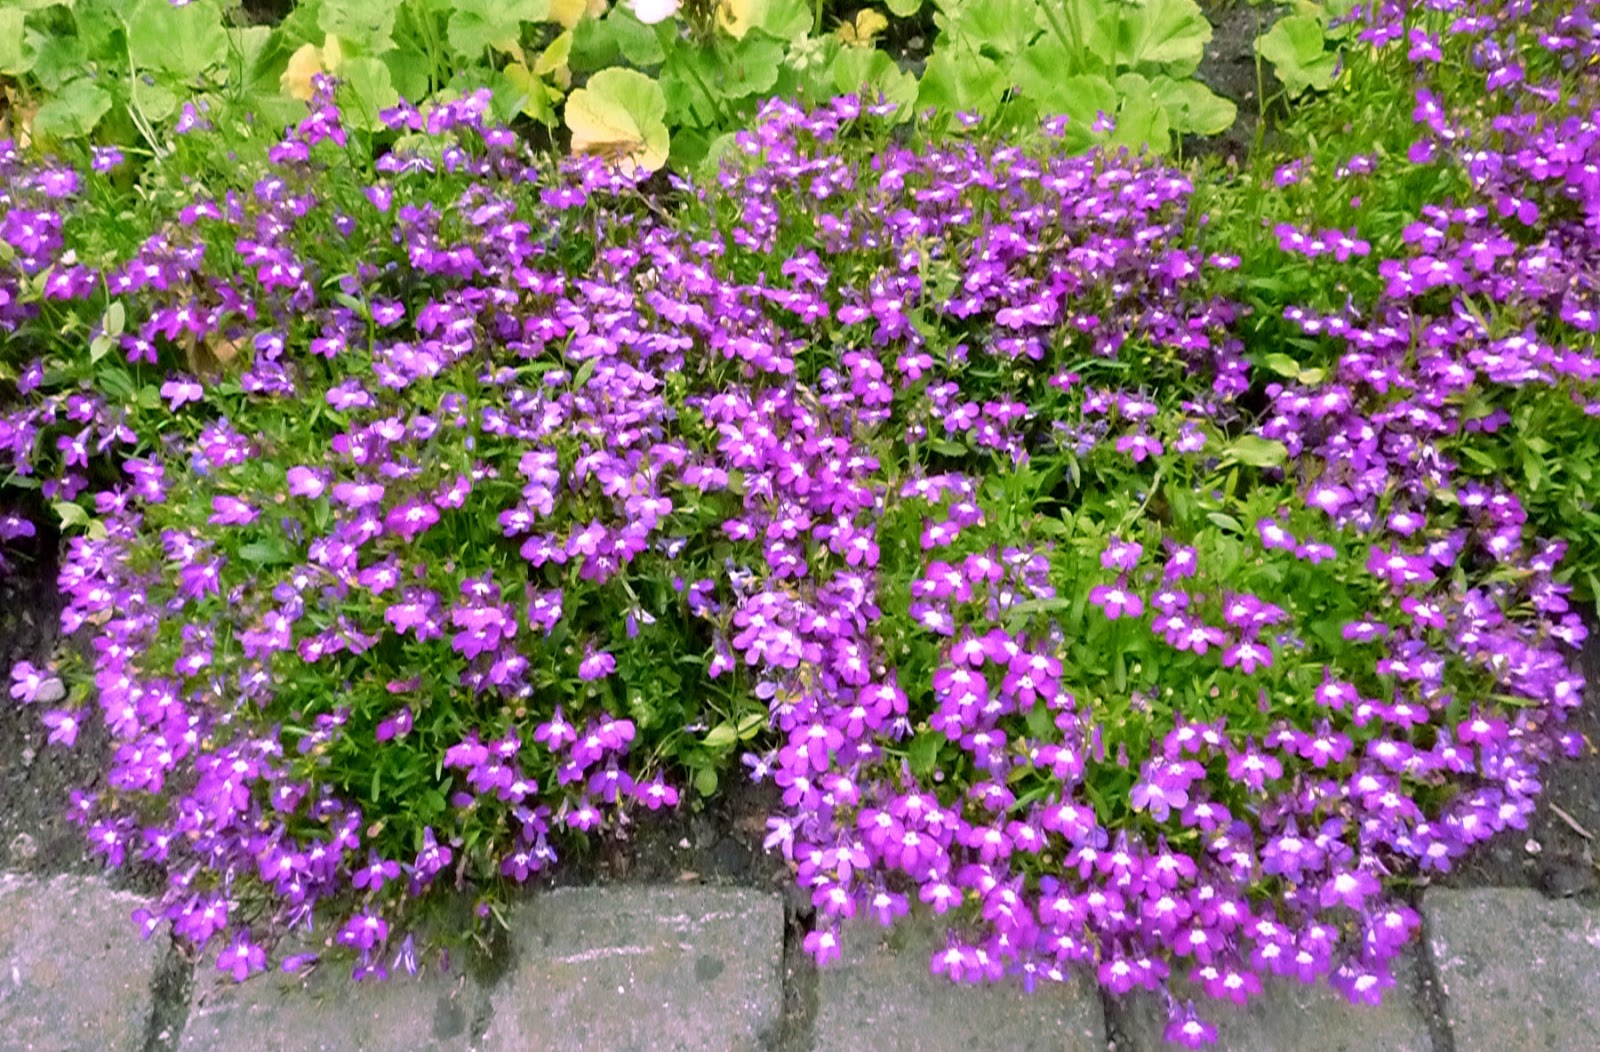 Kỹ thuật trồng cây hoa Thúy điệp chậu treo cho vườn nhà rực rỡ sắc hương - ảnh 3